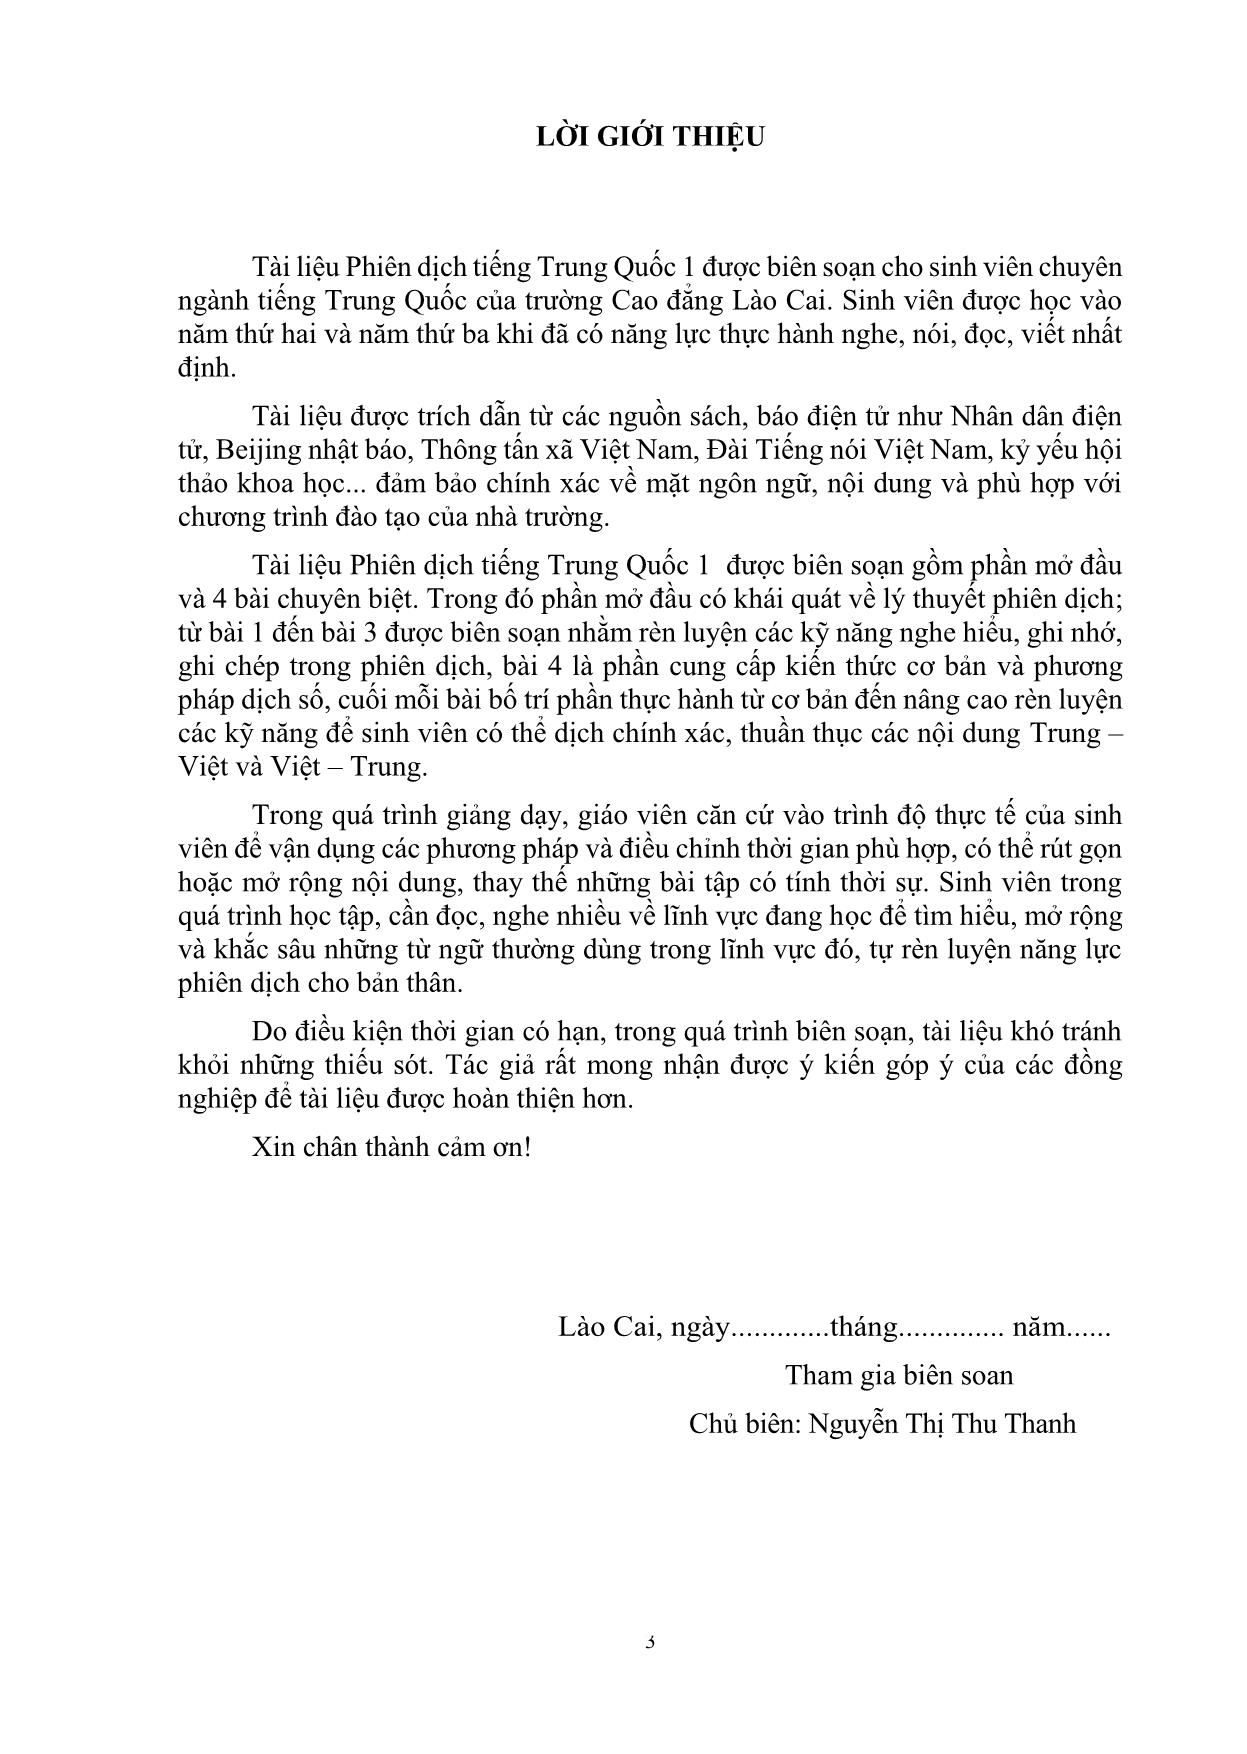 Giáo trình Phiên dịch tiếng Trung Quốc 1 trang 3